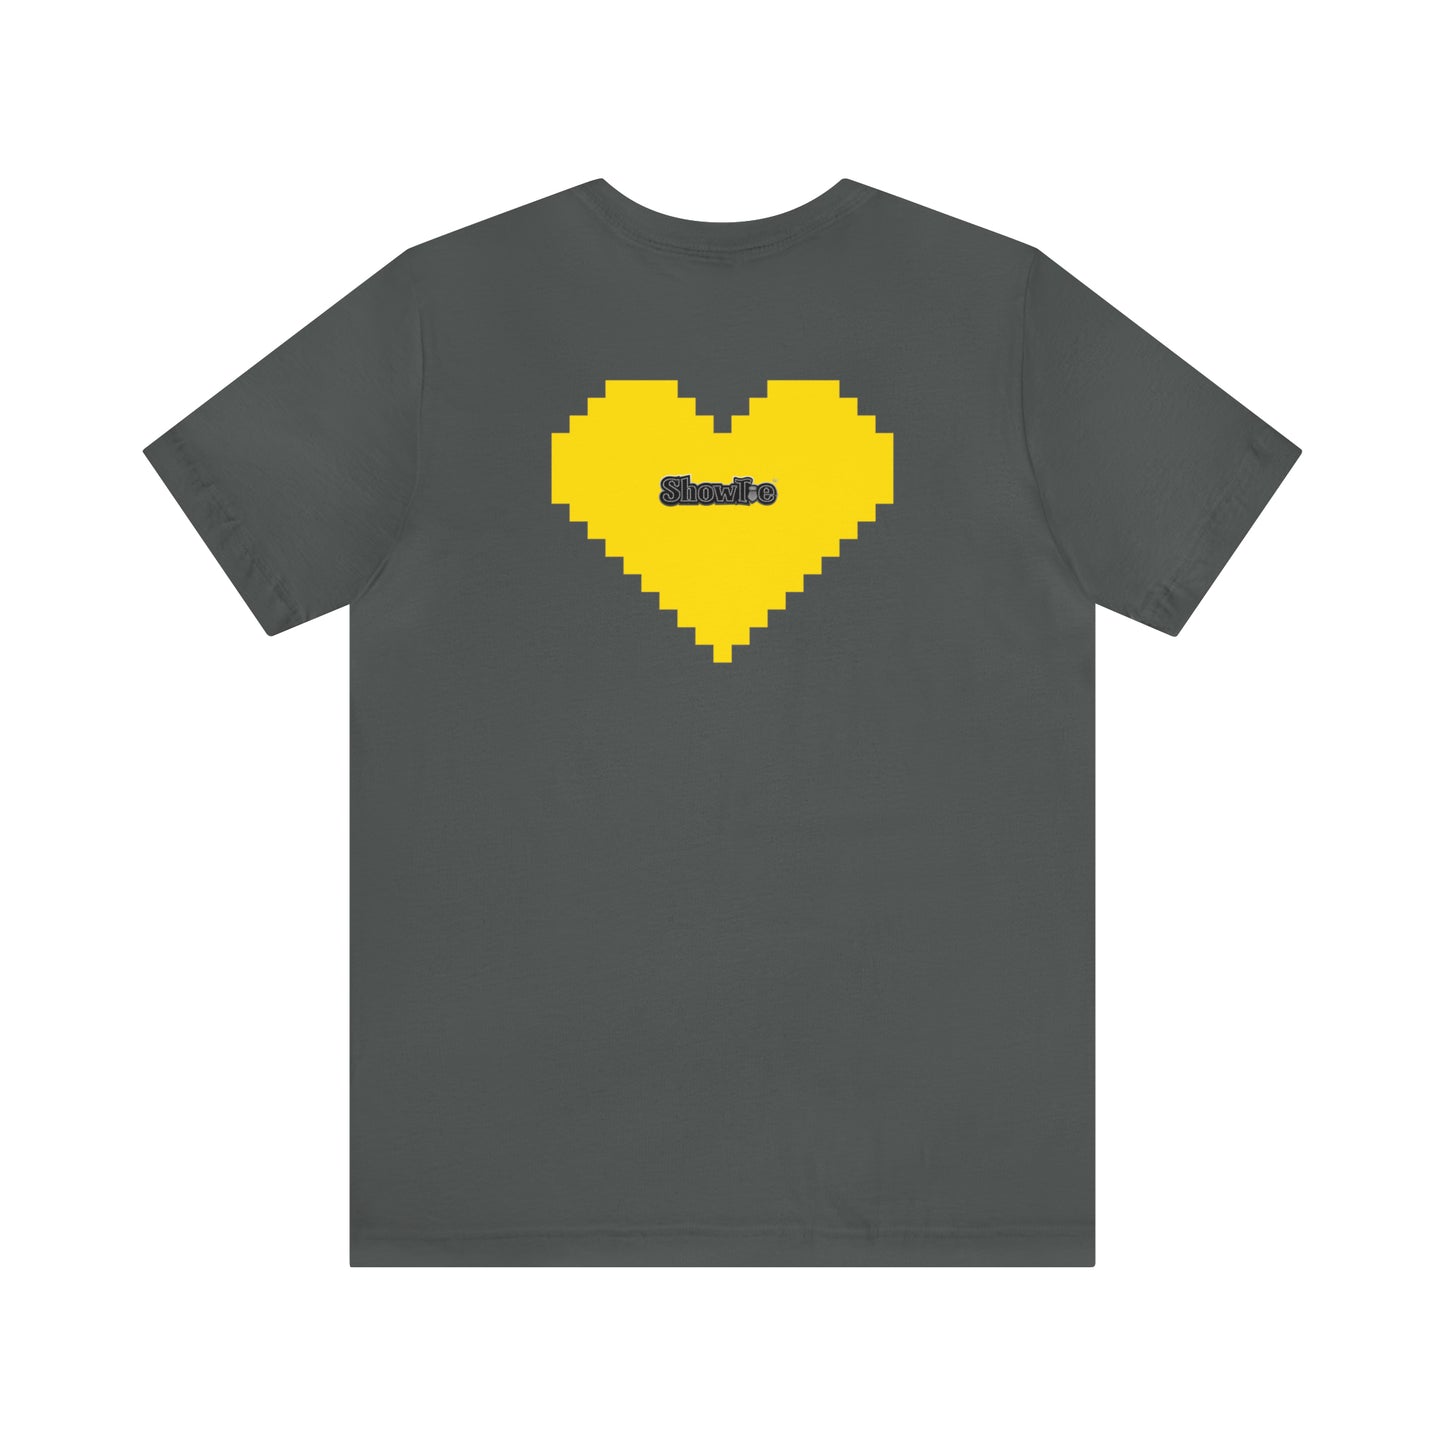 8 Bit Lover Showtie Tee (Yellow)